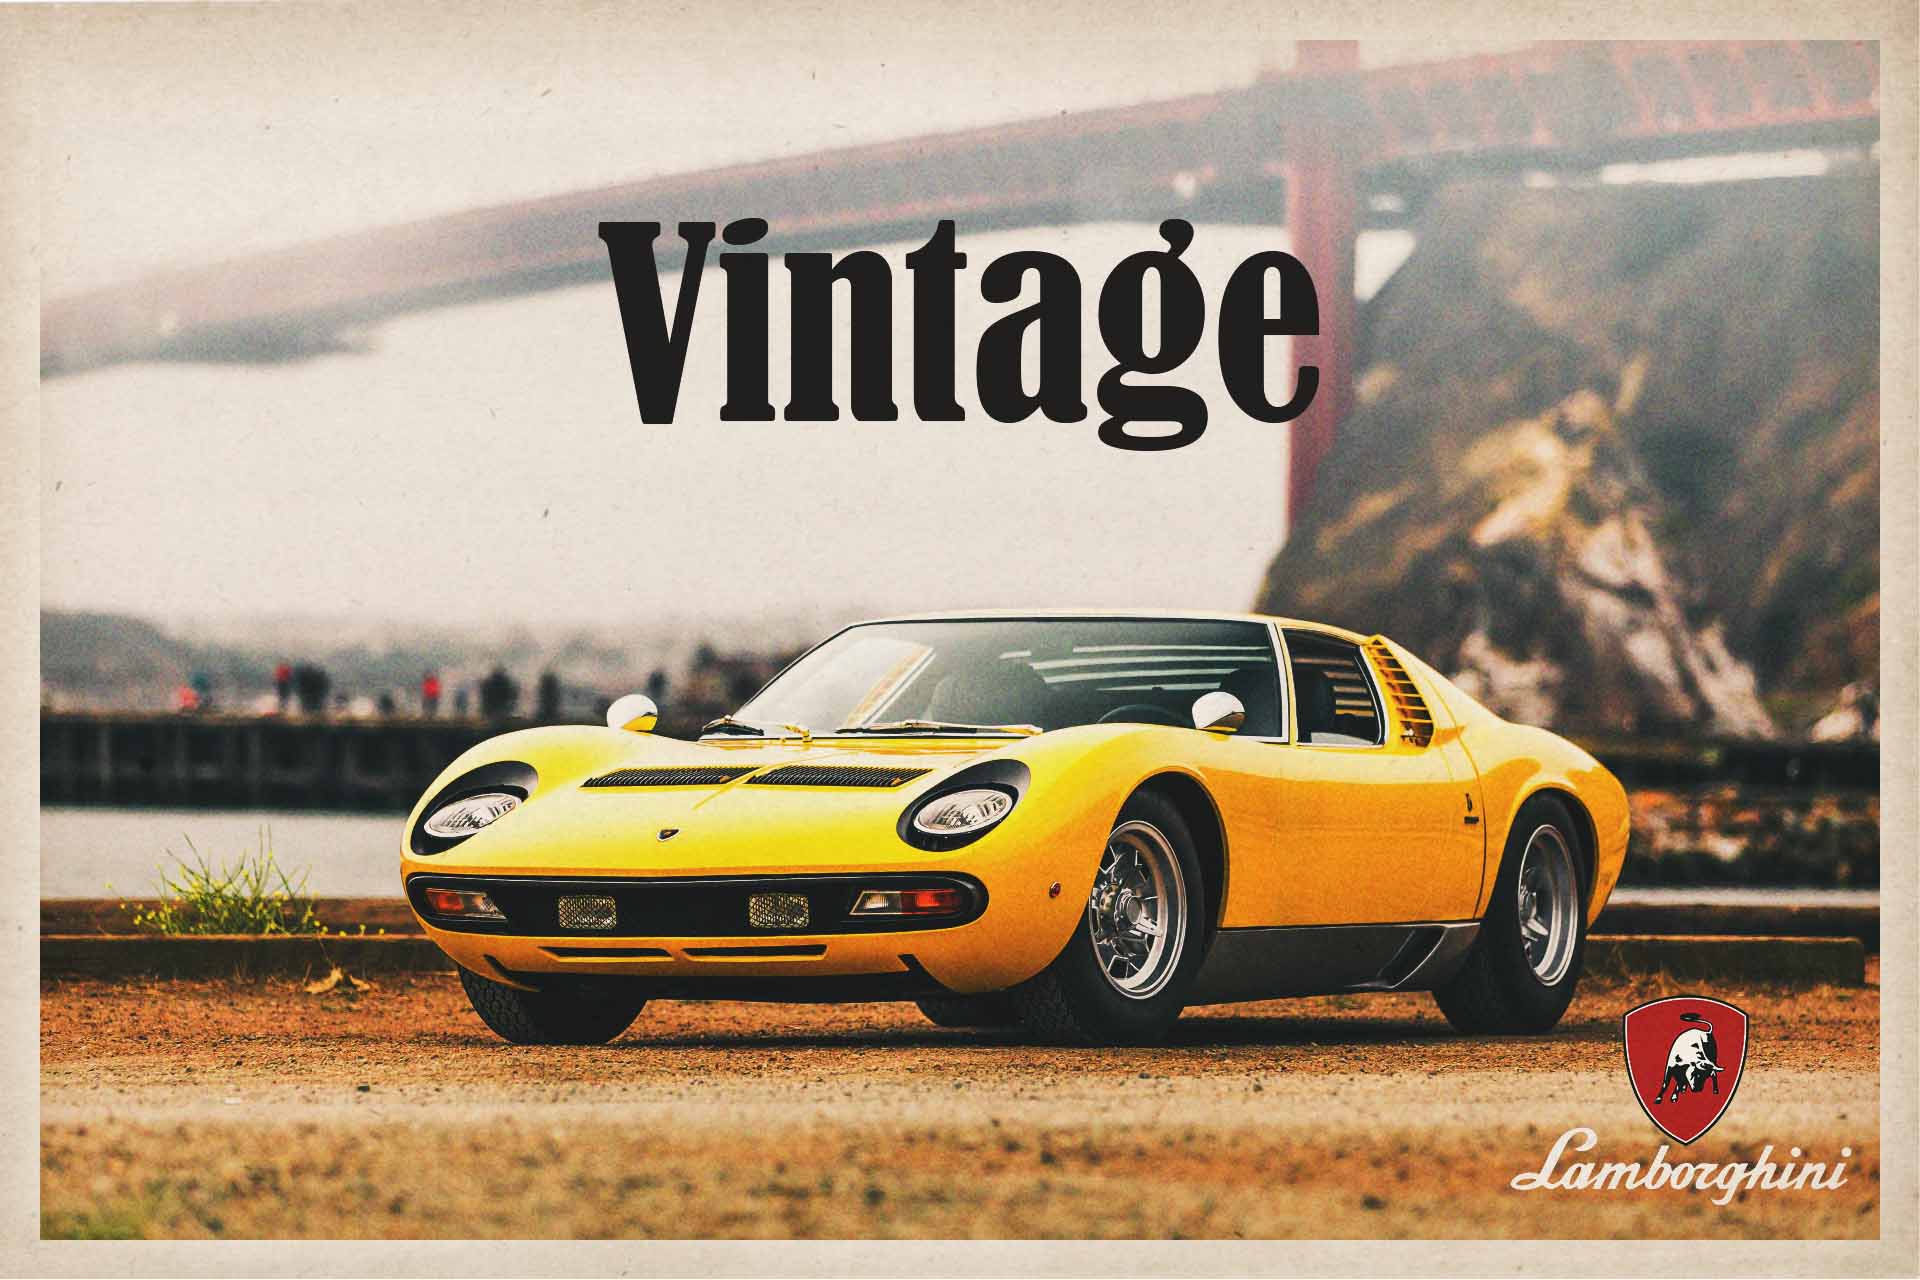 List of Lamborghini Vintage Vehicles